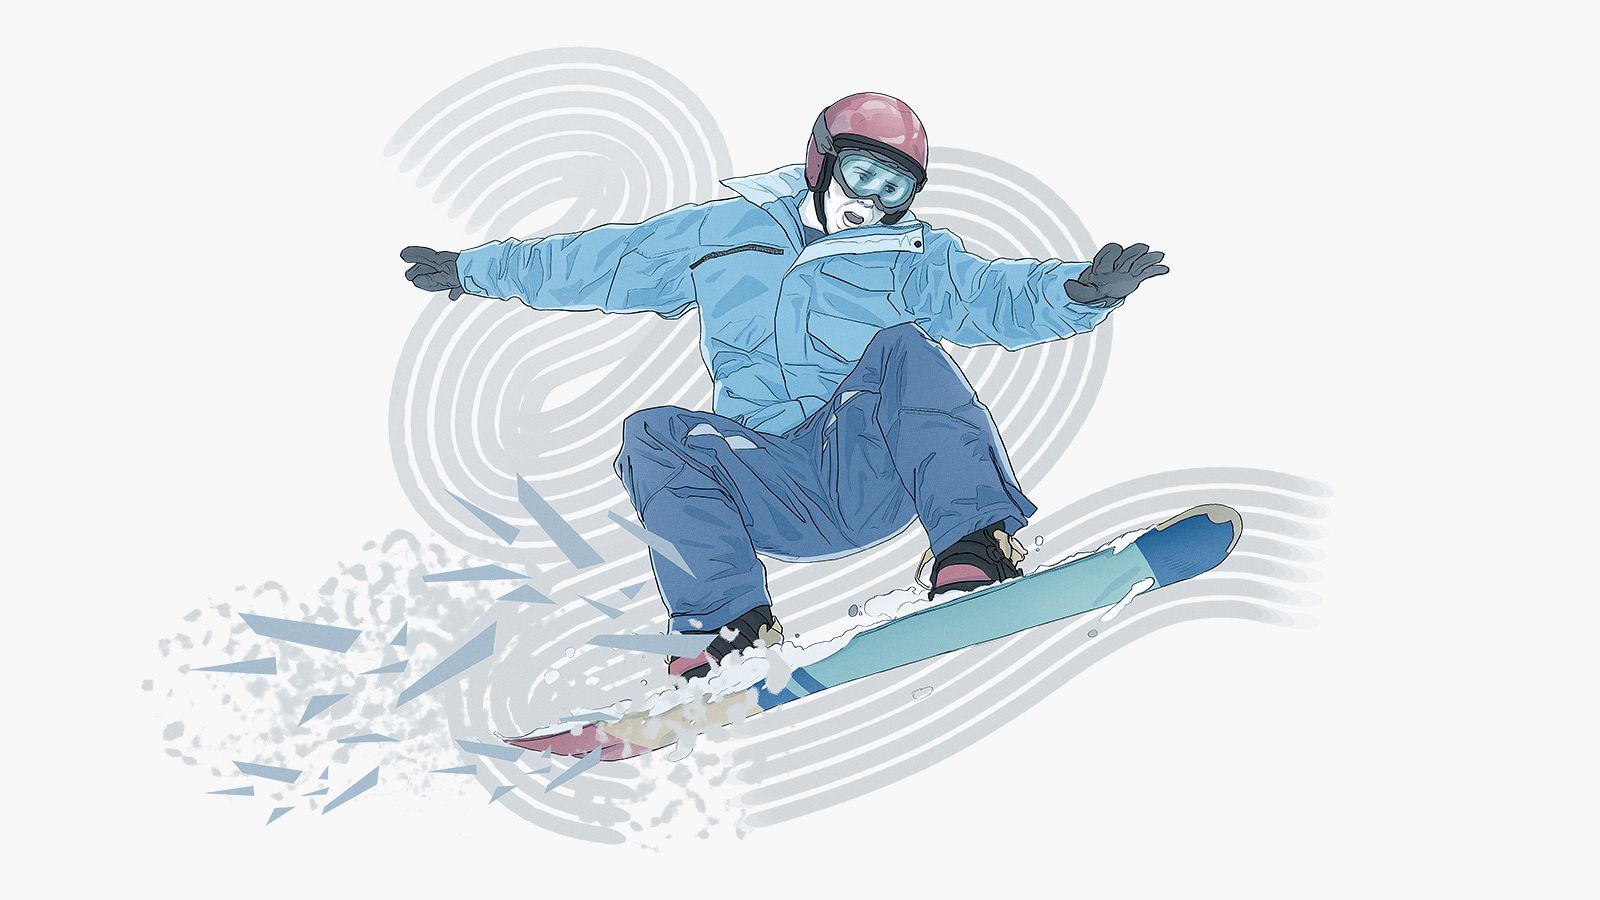 El snowboard será una de las disciplinas más espectacularesen Pekín 2022